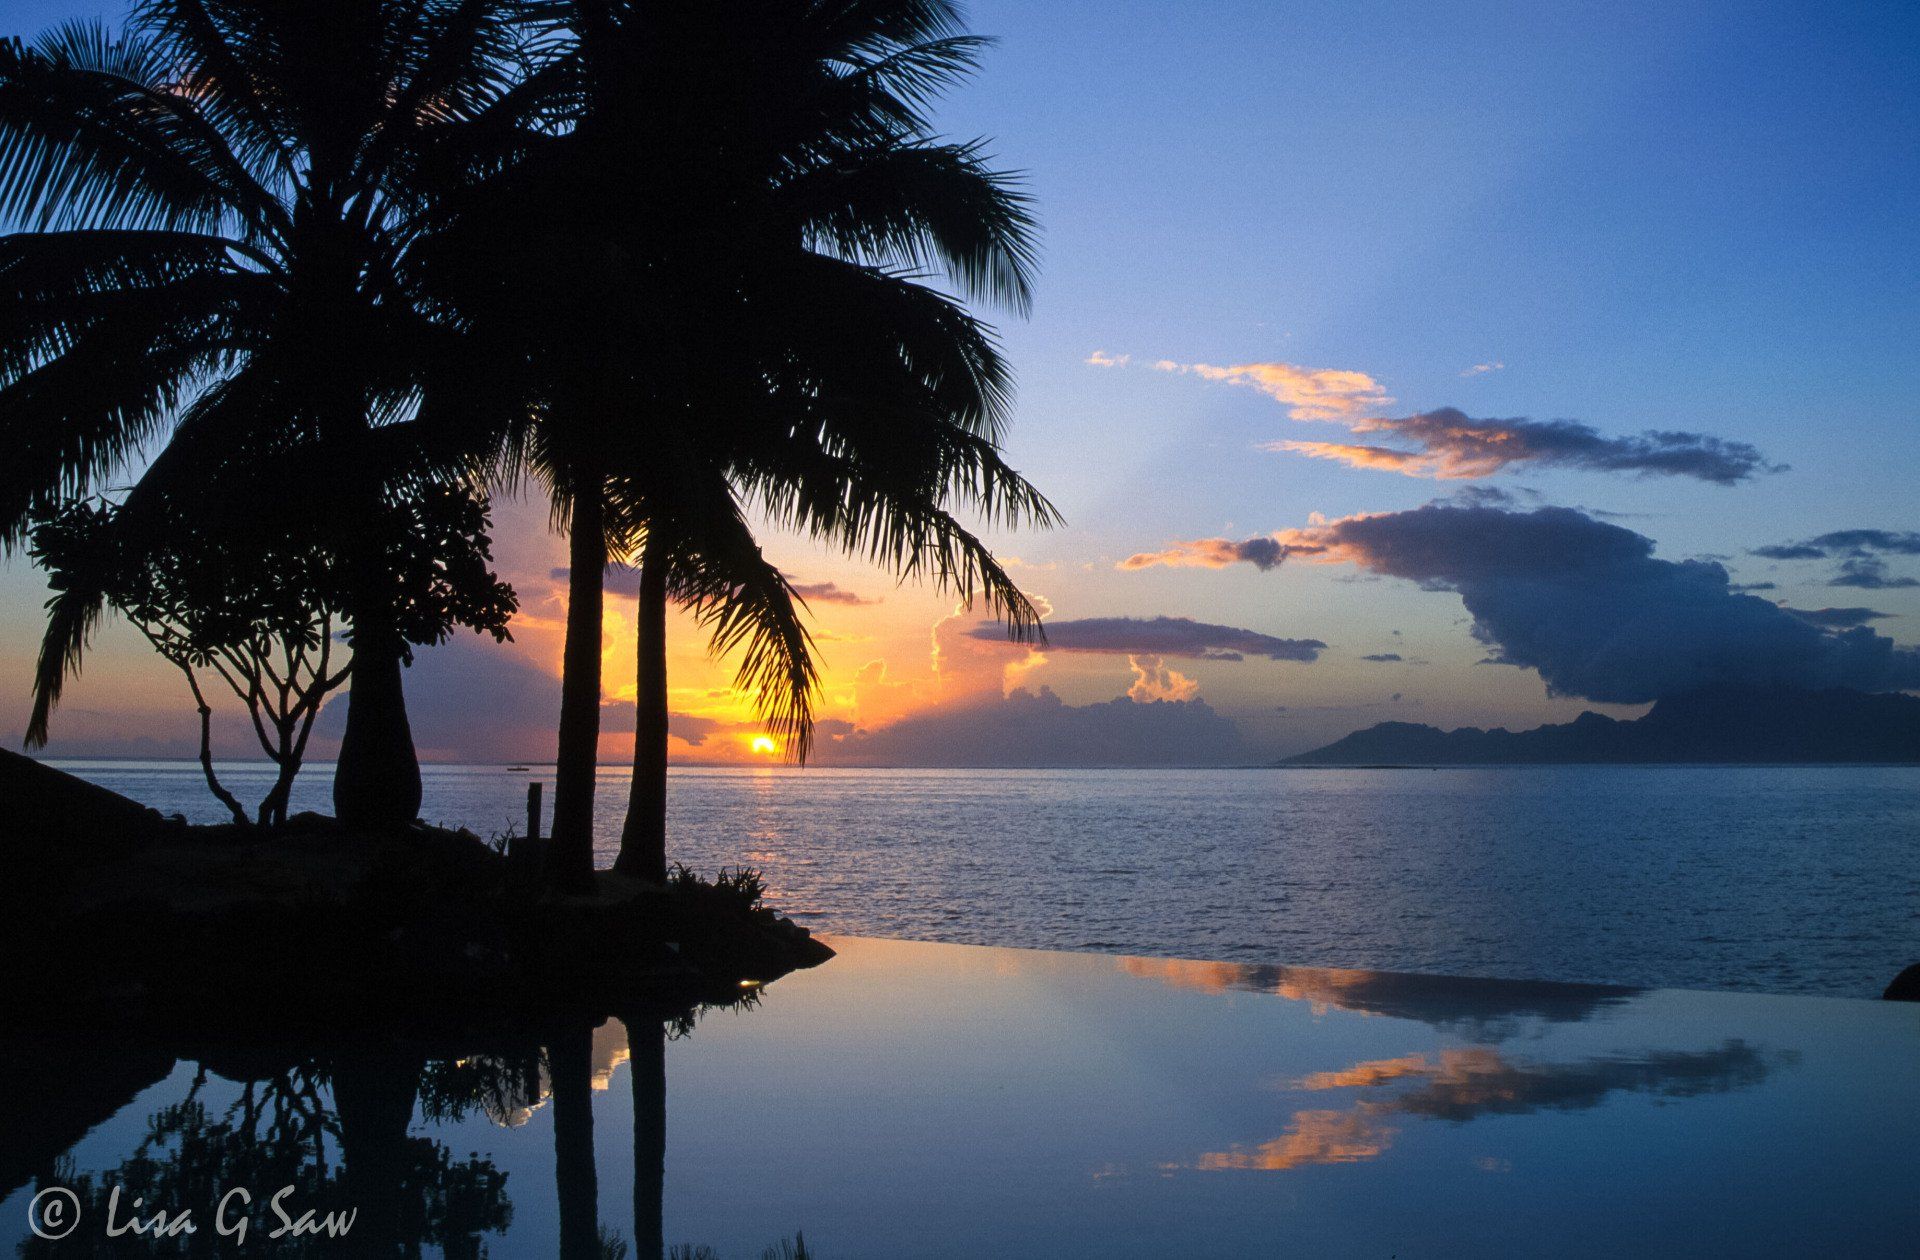 Palm Trees and lagoon at Sunset, Tahiti